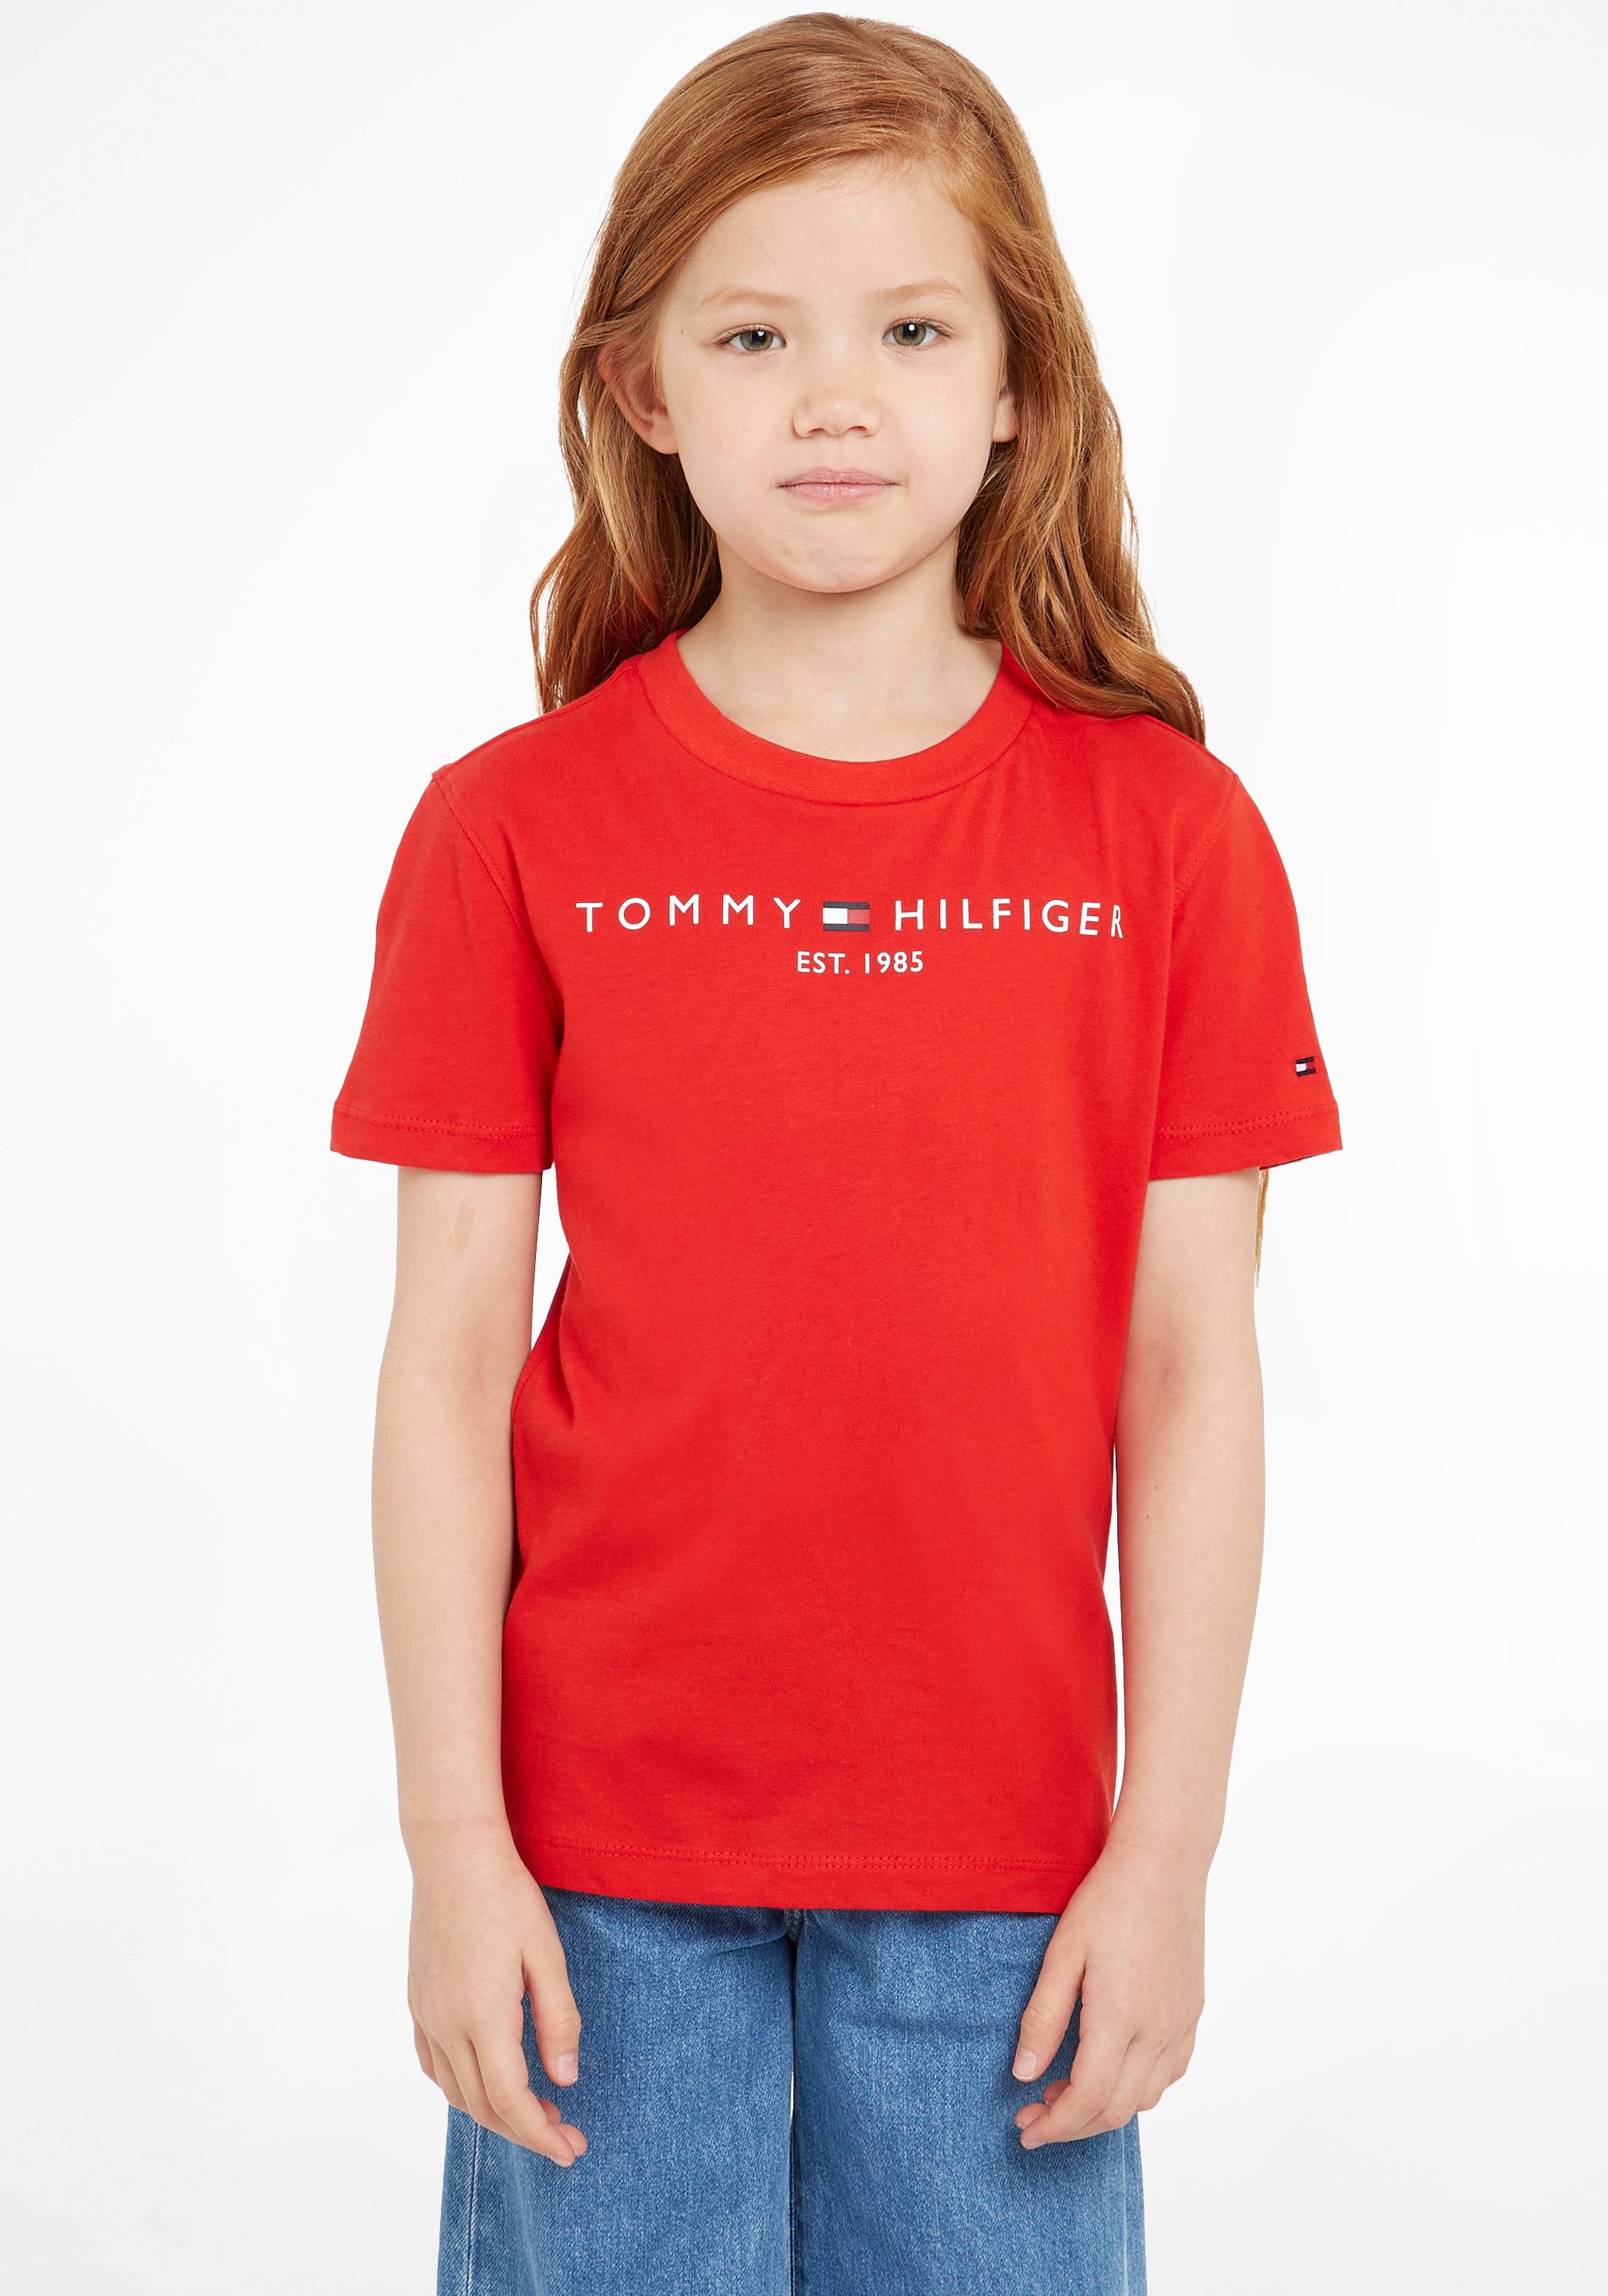 Tommy Jungen und en Hilfiger Acheter »ESSENTIAL ligne Mädchen T-Shirt für TEE«, ✌